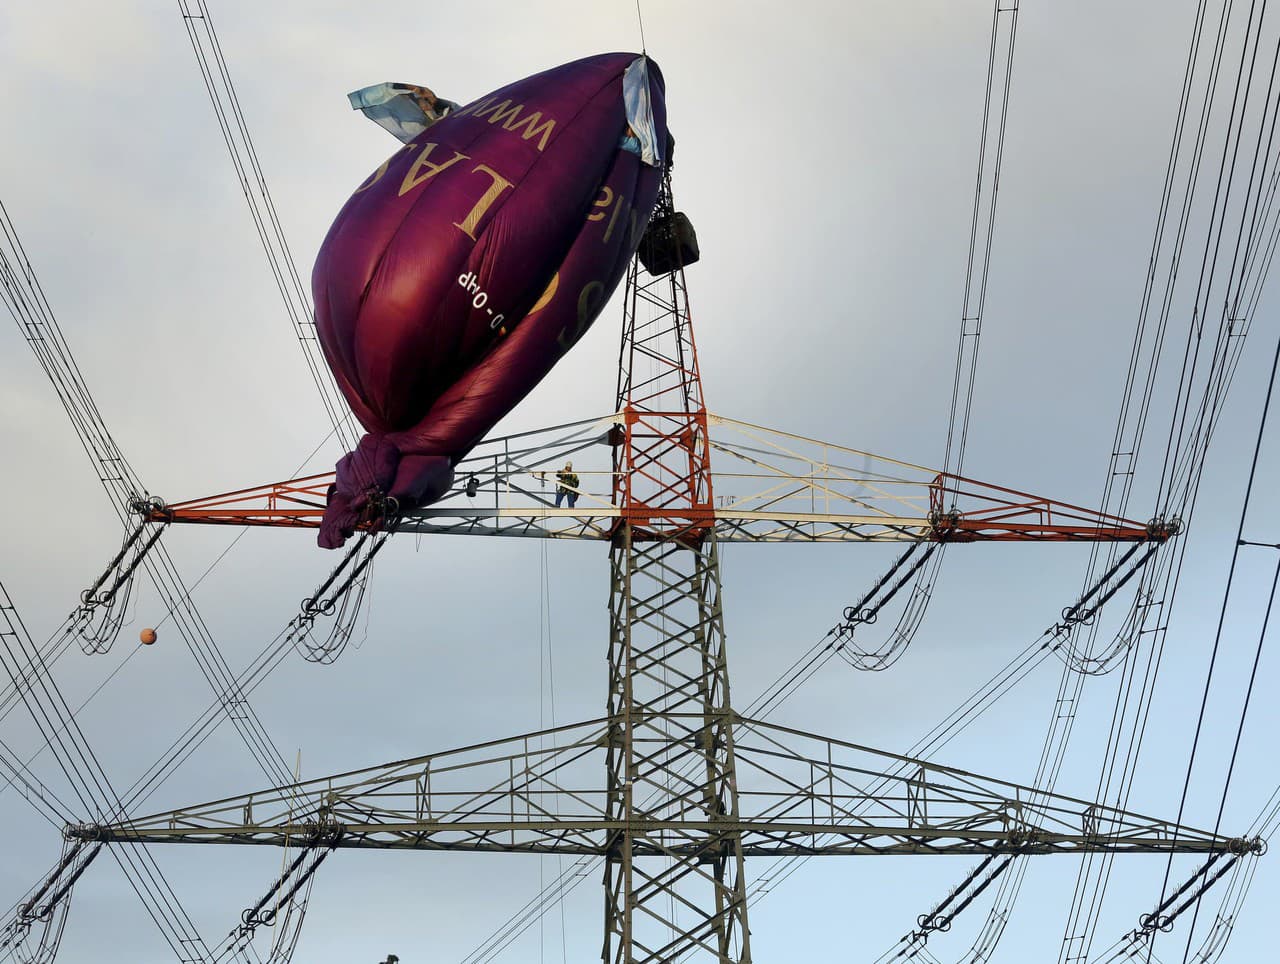 Teplovzdušný balón, ktorý v nedeľu večer narazil pri Bottrope do vedenia vysokého napätia 